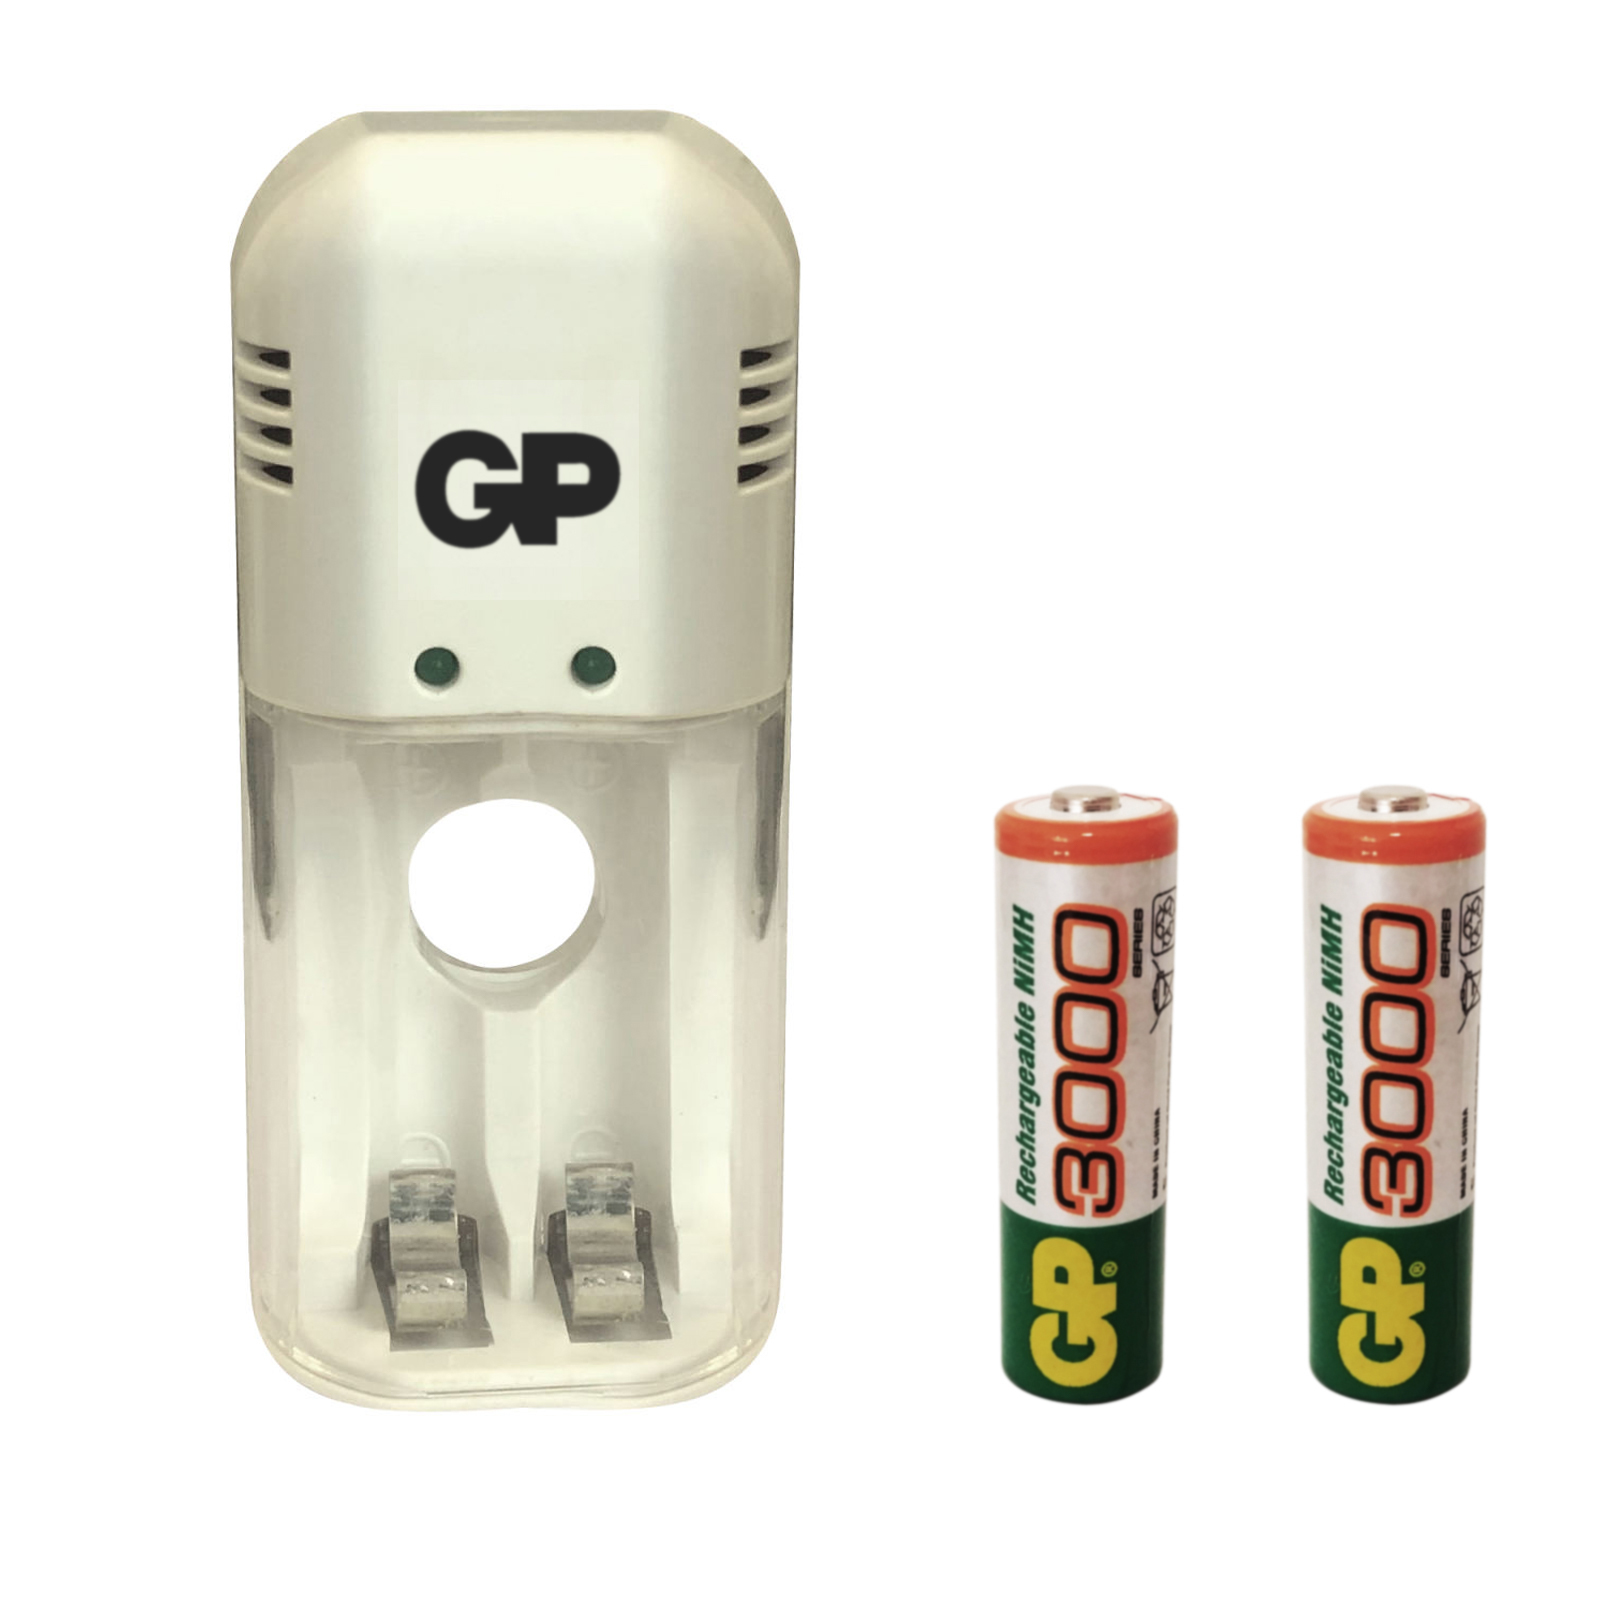 شارژر باتری جی پی مدل GP-320 به همراه 2 عدد باتری قلمی